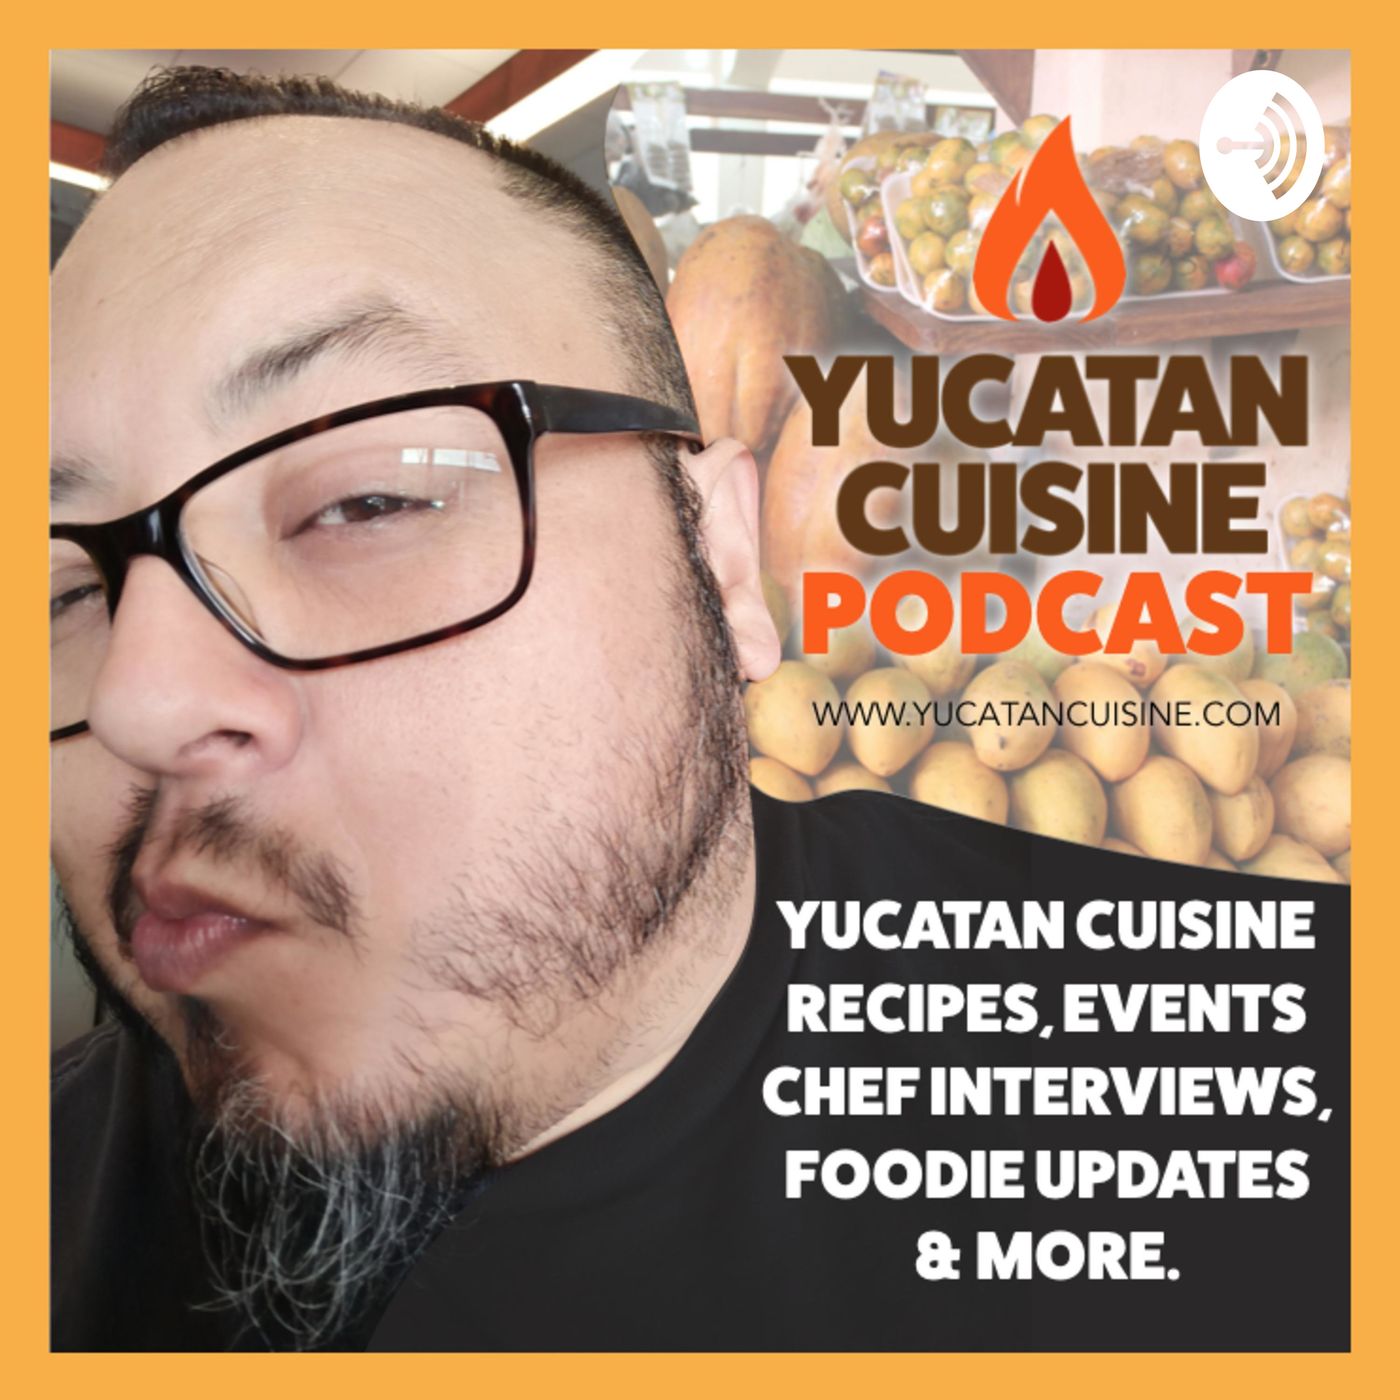 Yucatan Cuisine by Alfonso Mujica